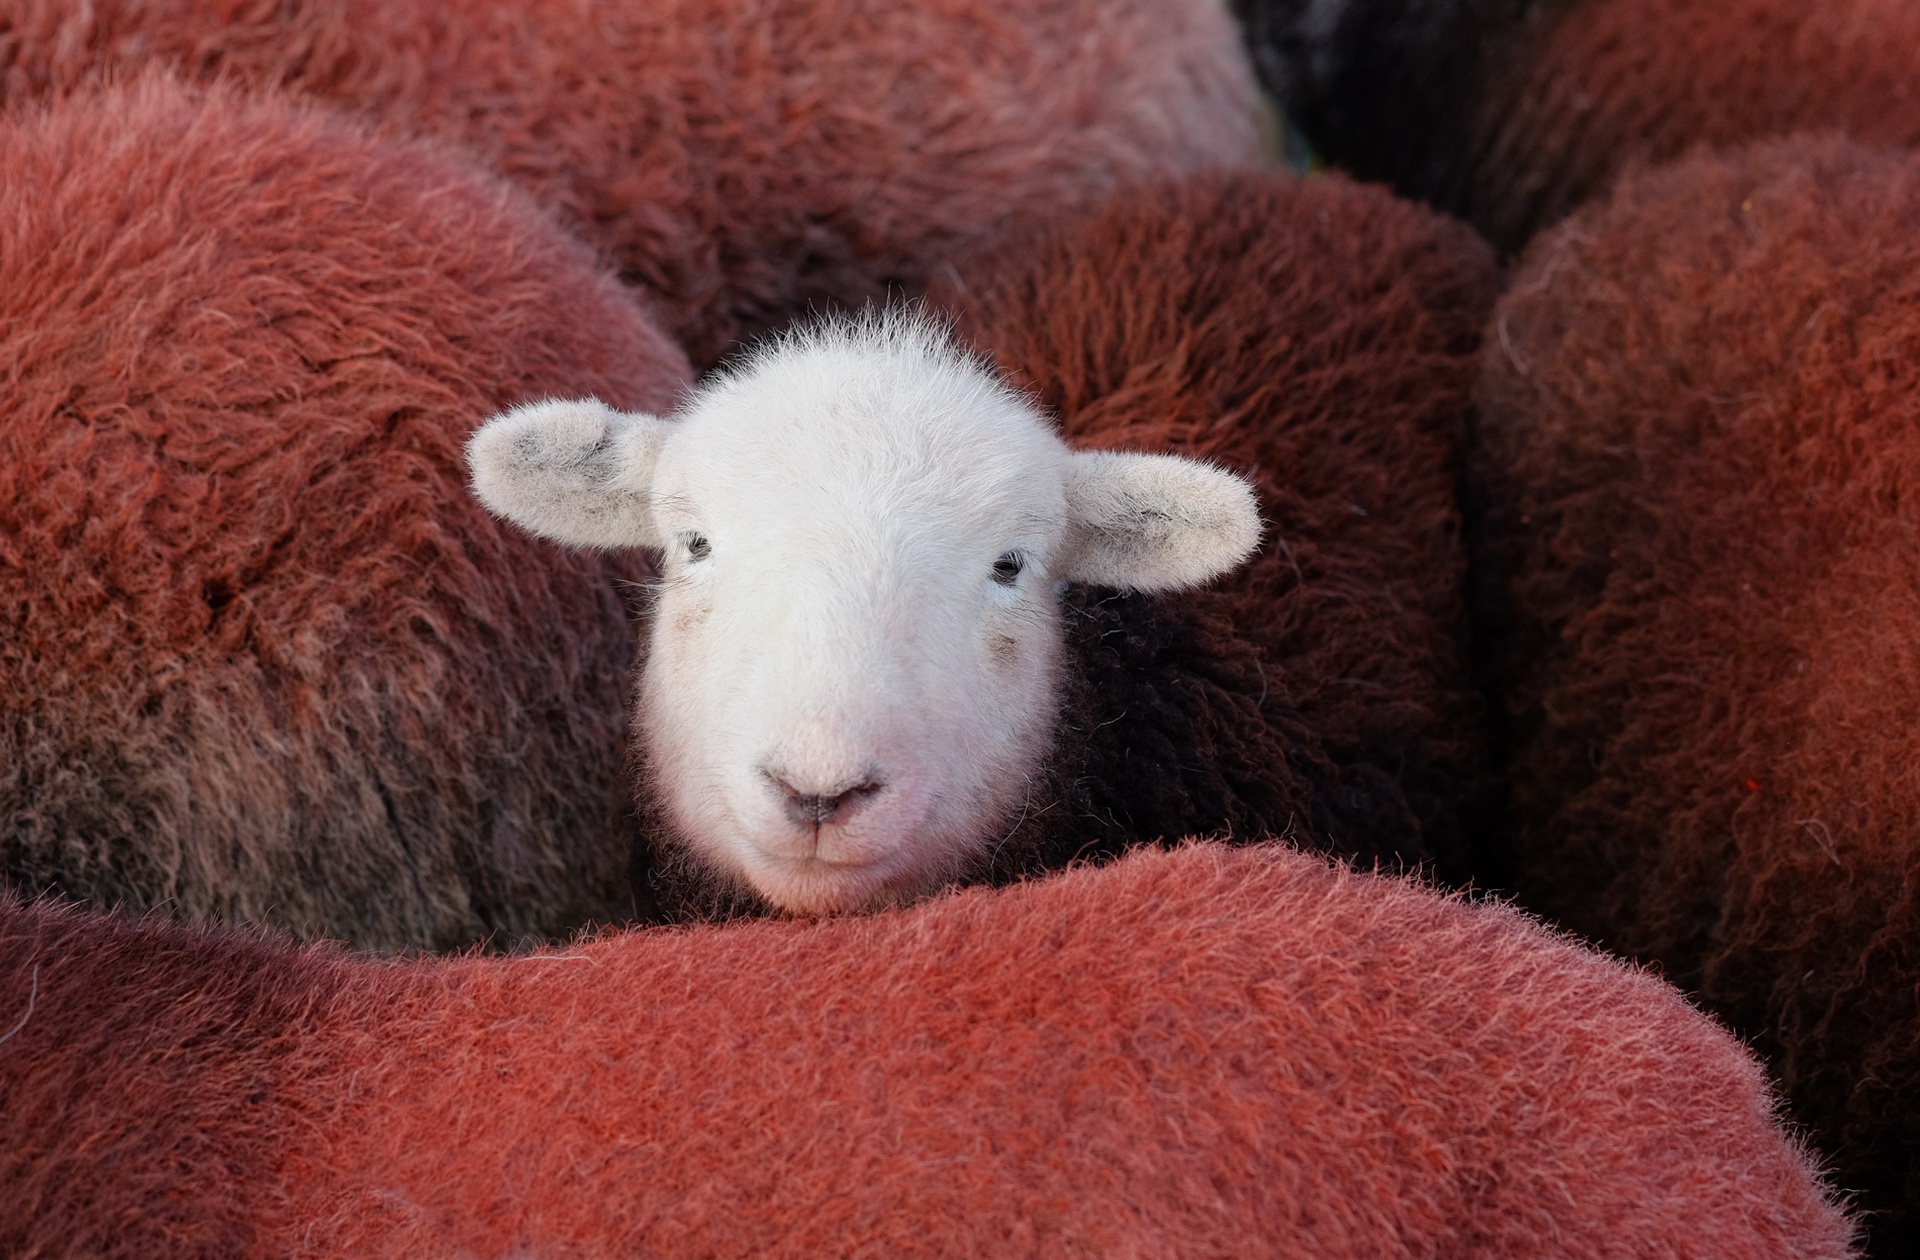 Free download wallpaper Animal, Sheep on your PC desktop